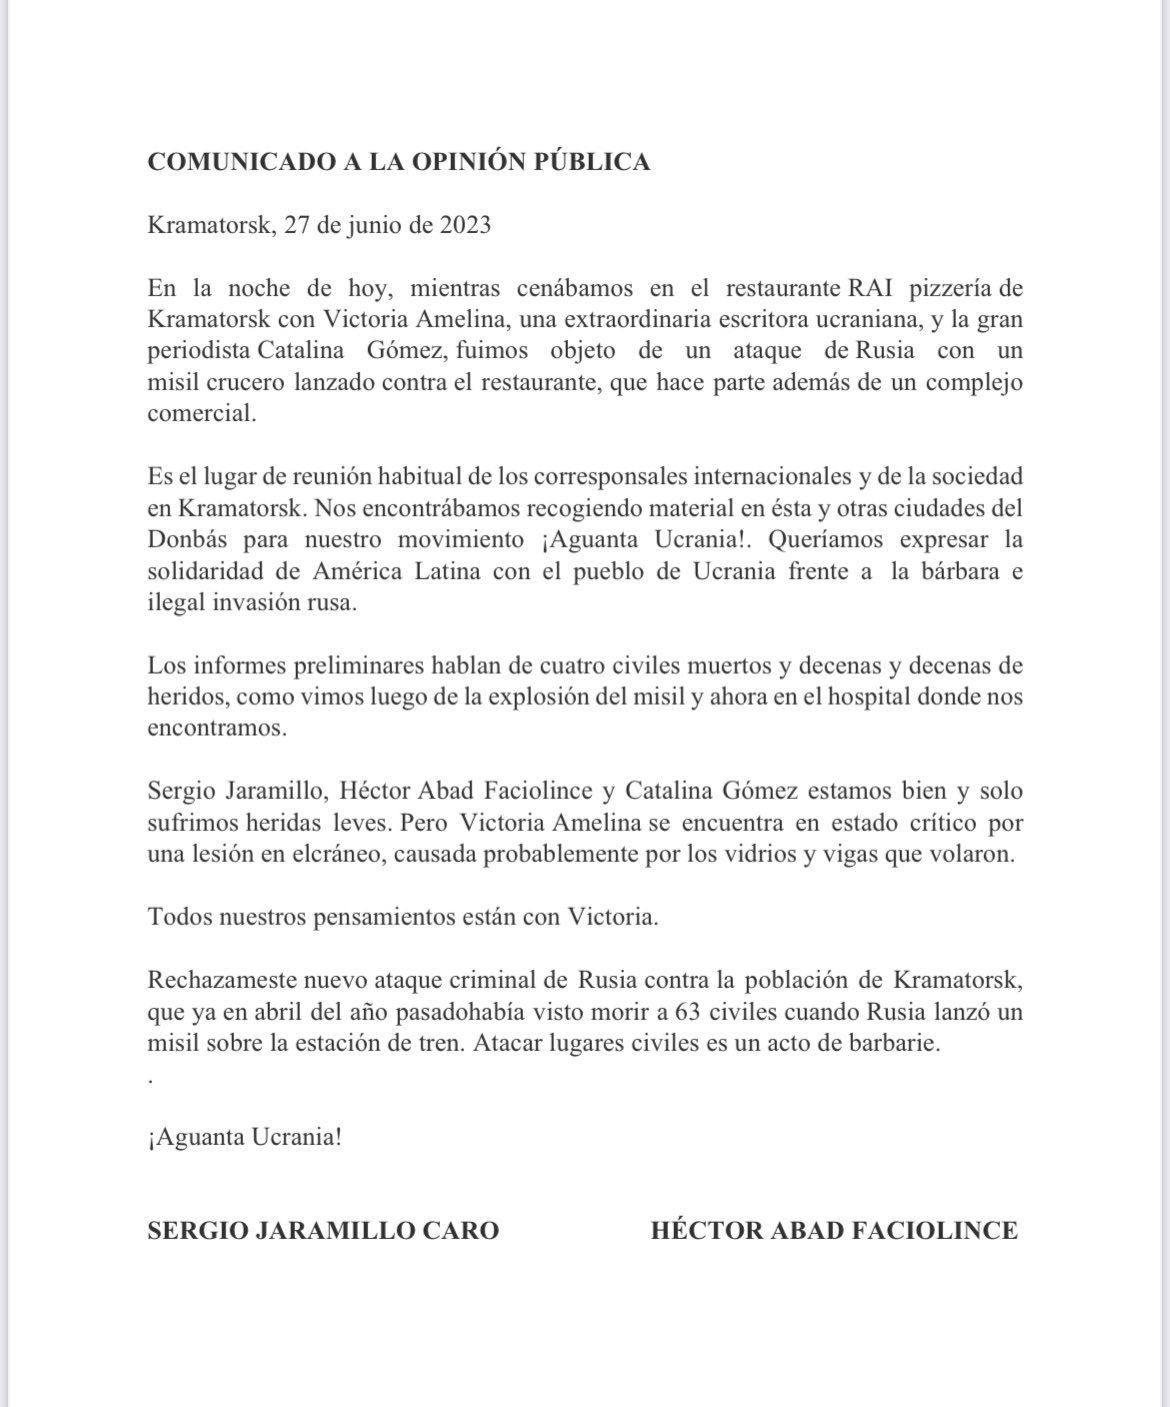 El comunicado emitido por Héctor Abad y Sergio Jaramillo.